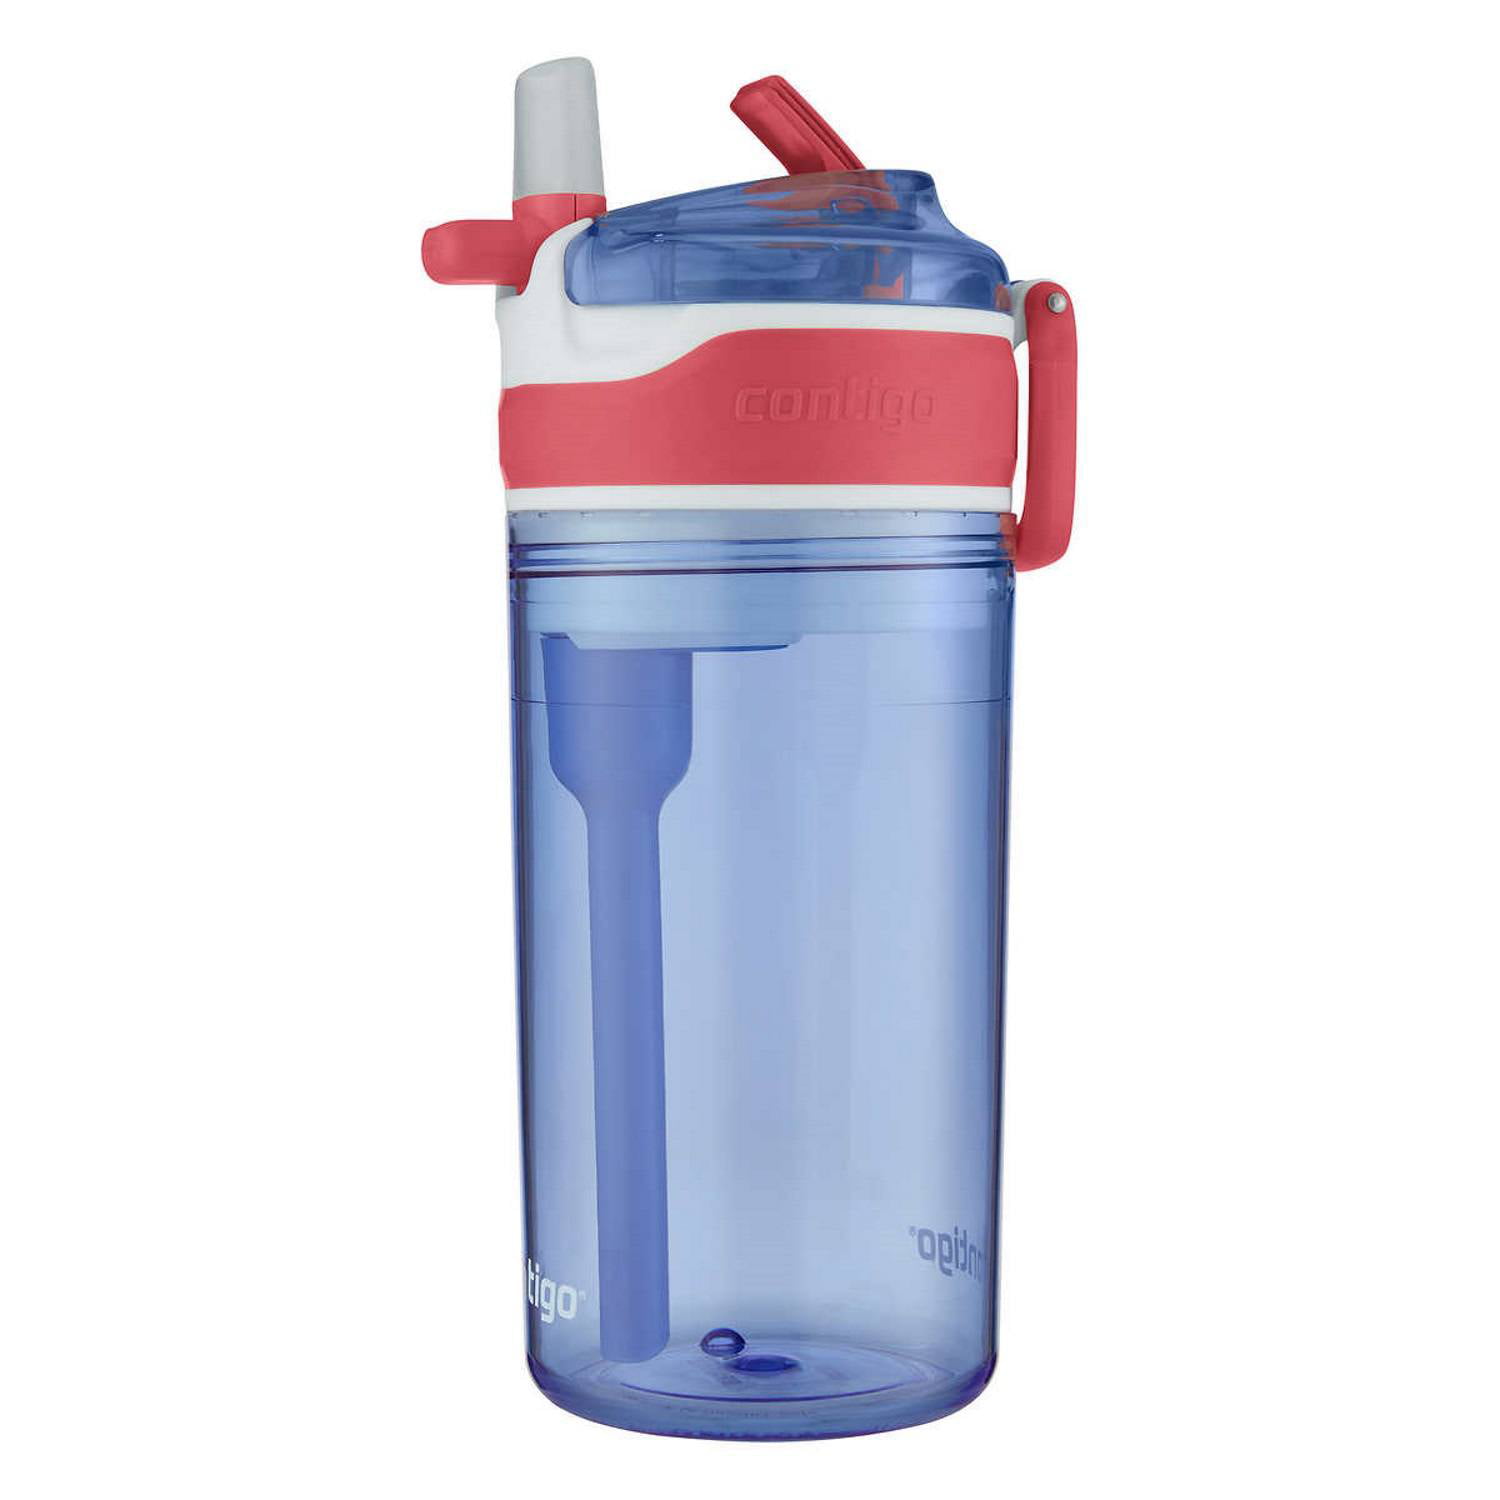 Contigo Kids Water Bottles 2-Pack for $13.79